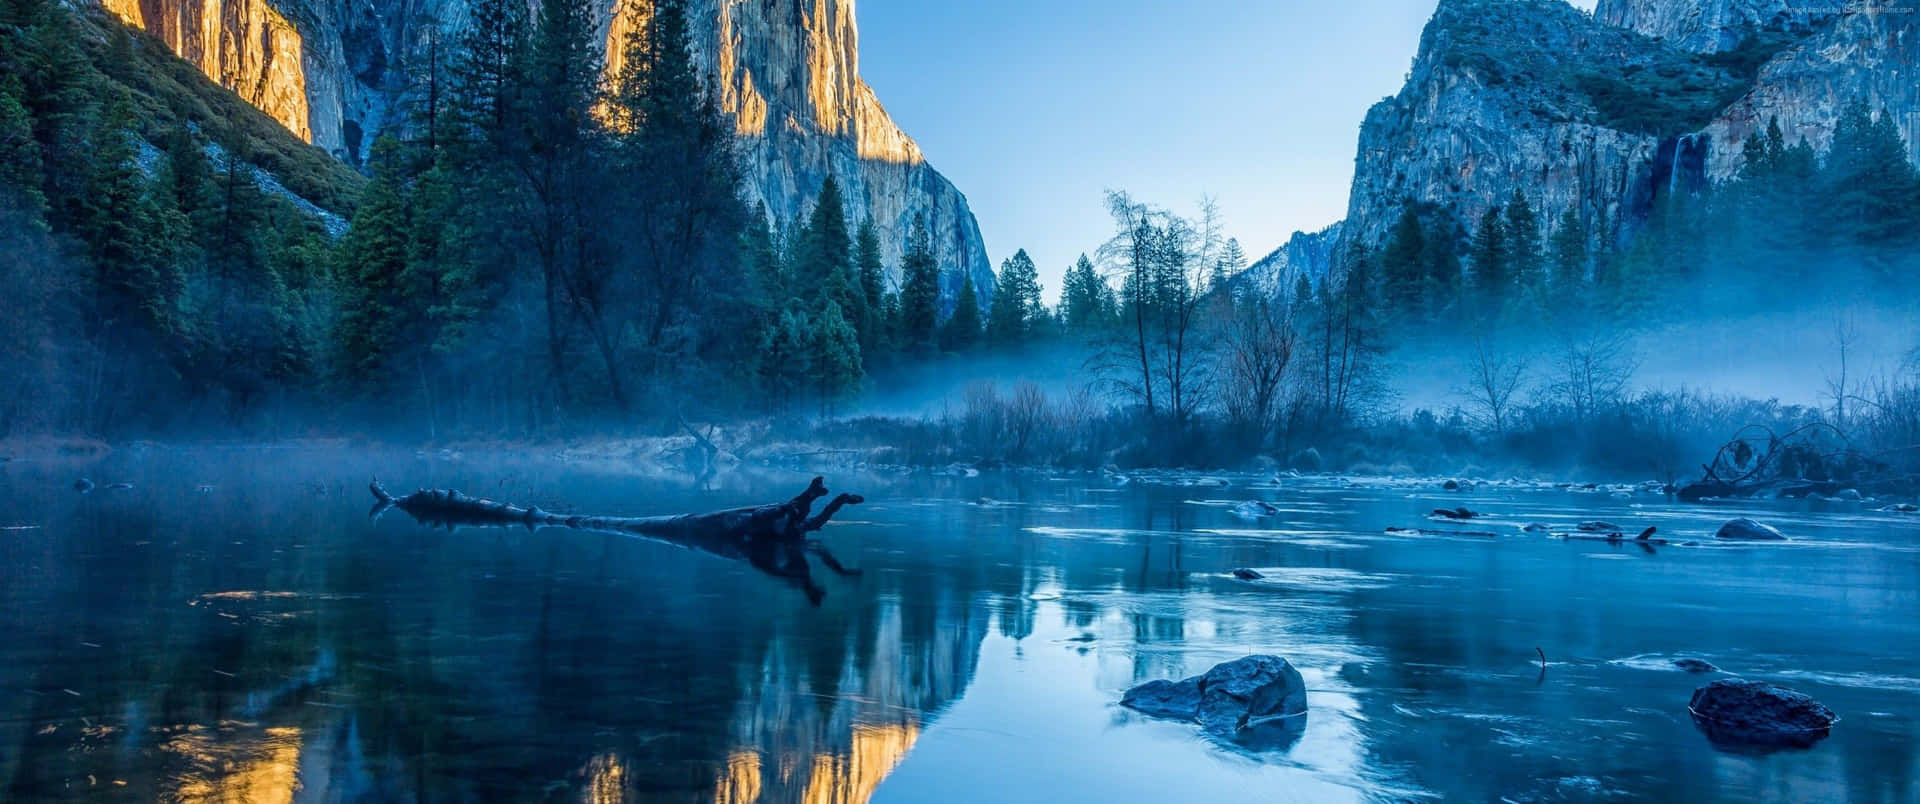 Yosemite National Park, Yosemite Dal, Californien. Wallpaper